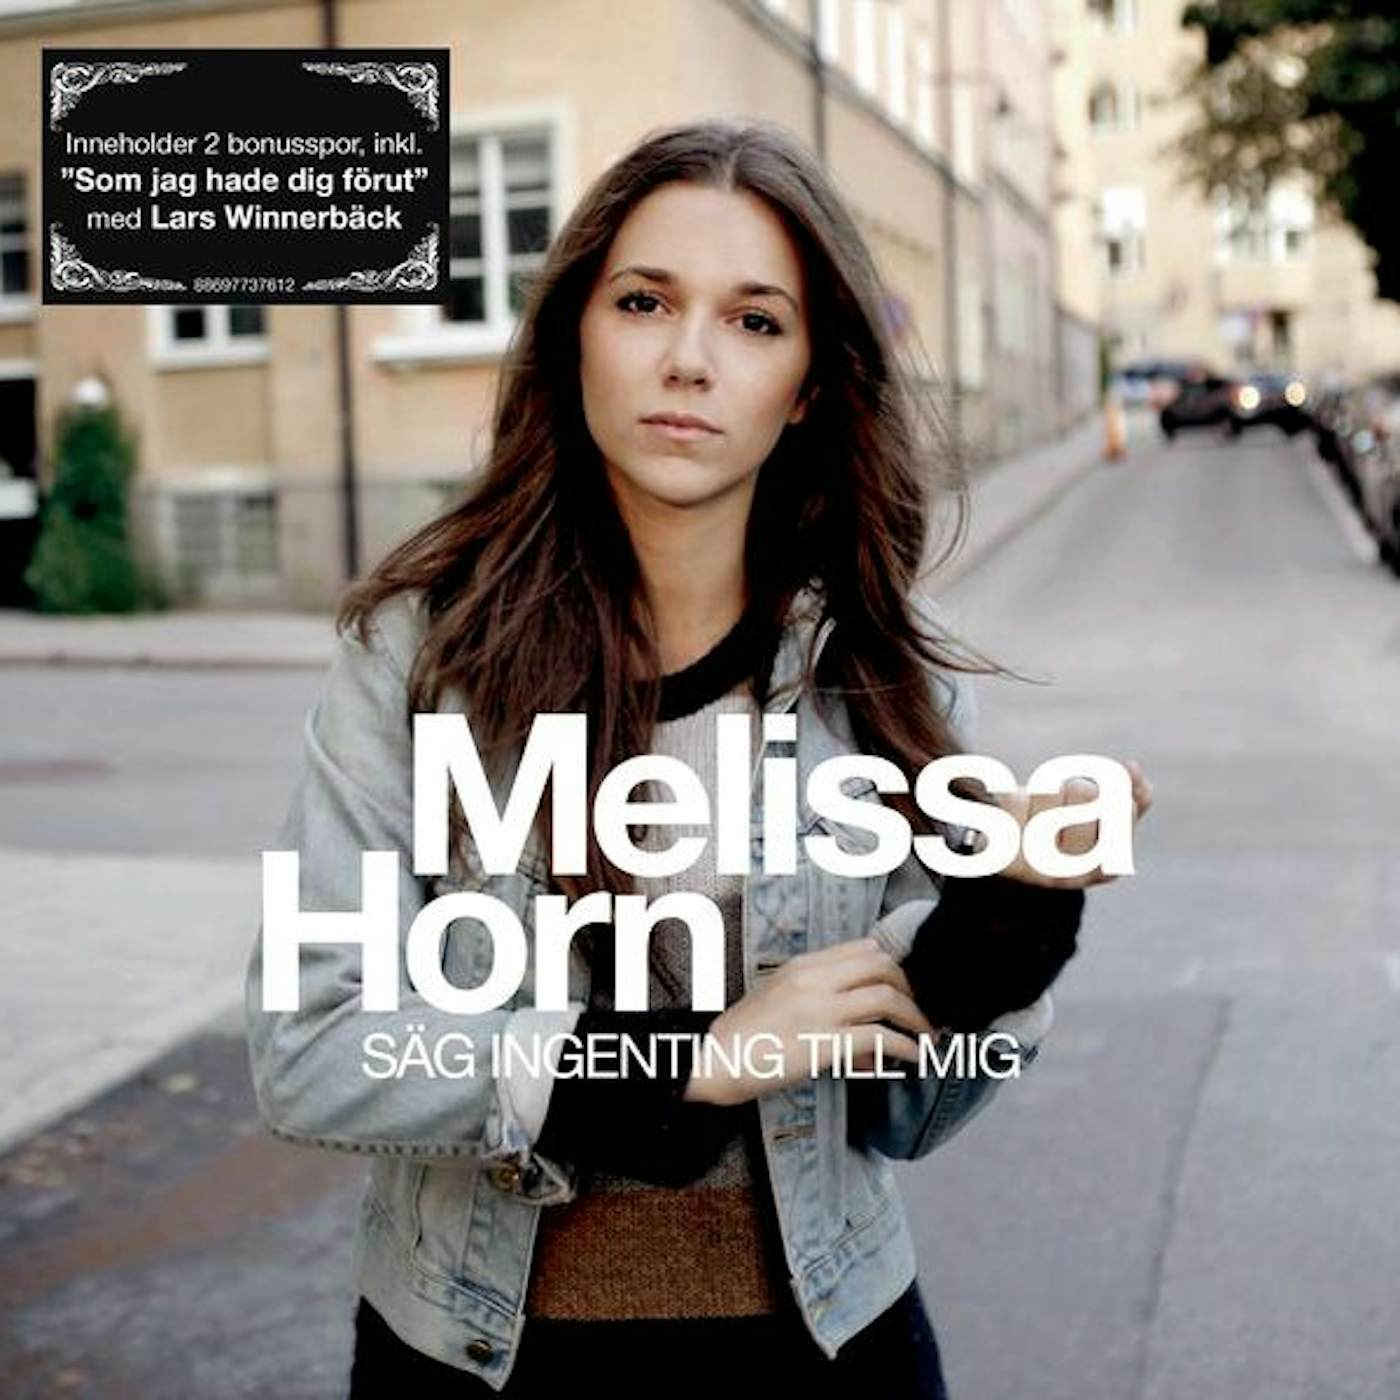 Melissa Horn SAG INGENTING TILL MIG Vinyl Record